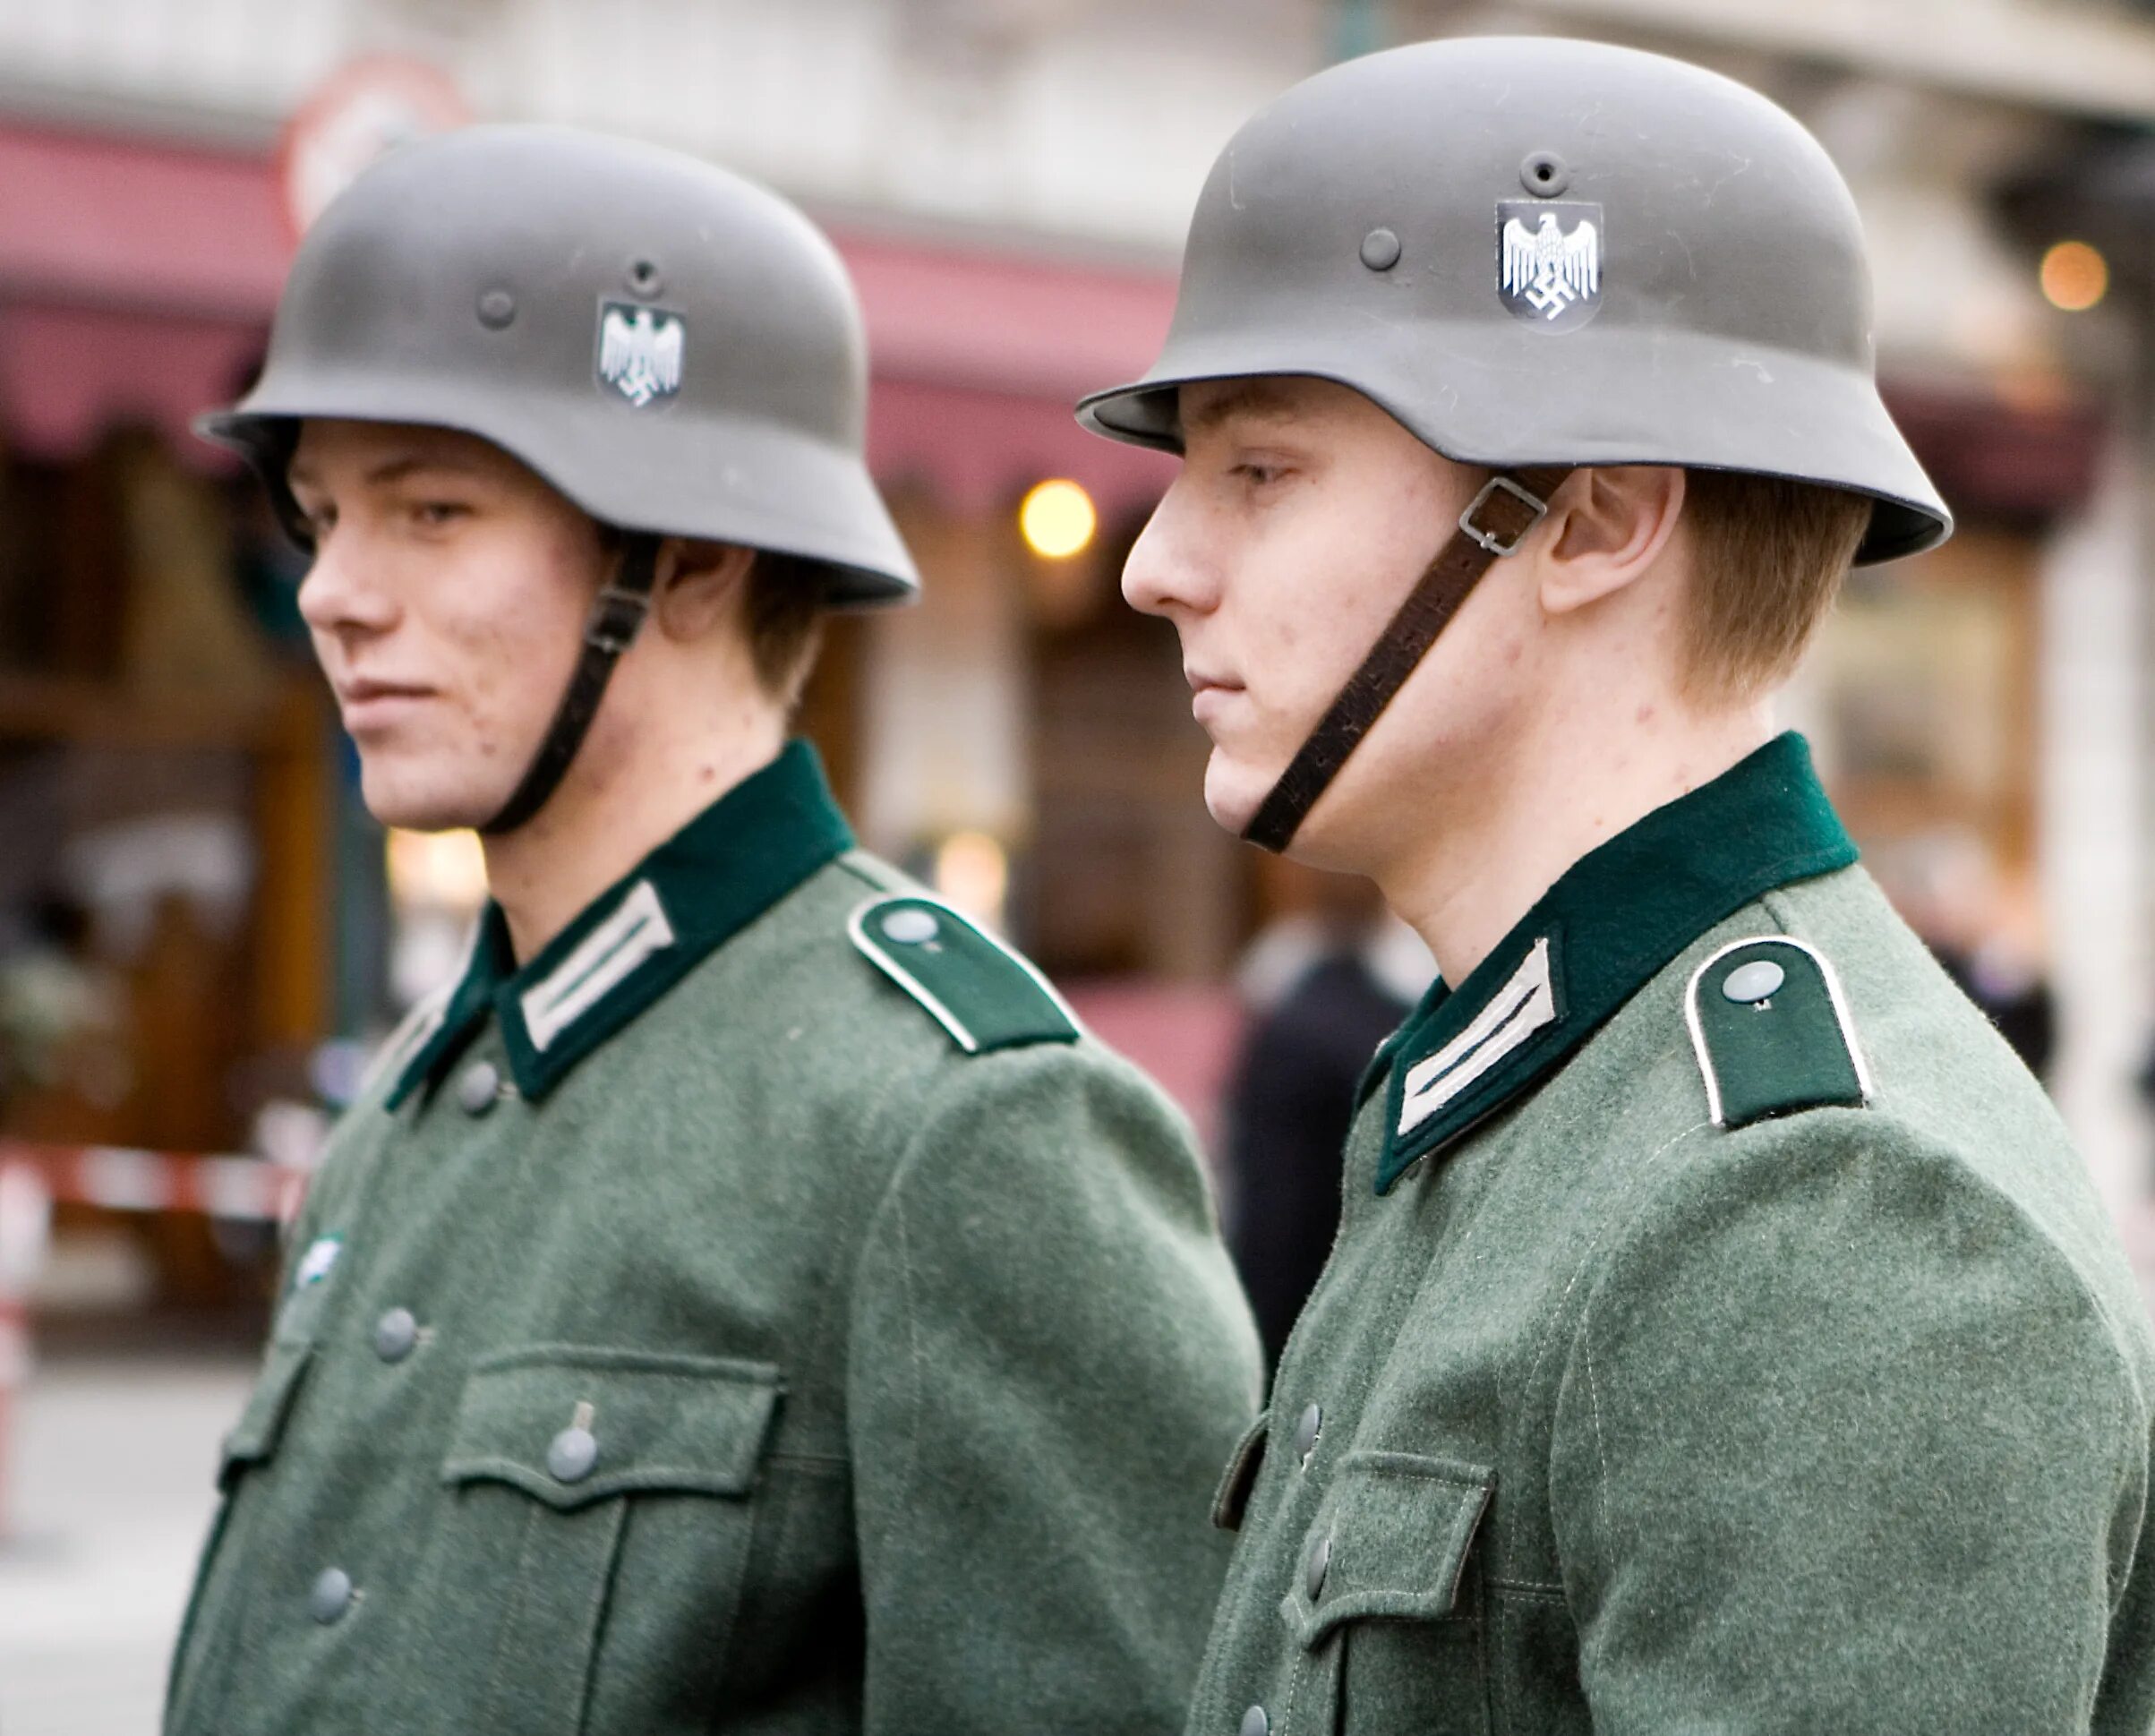 Нацистские солдаты. Нацистская Германия. Солдат СС. Форма похожая на нацистскую.